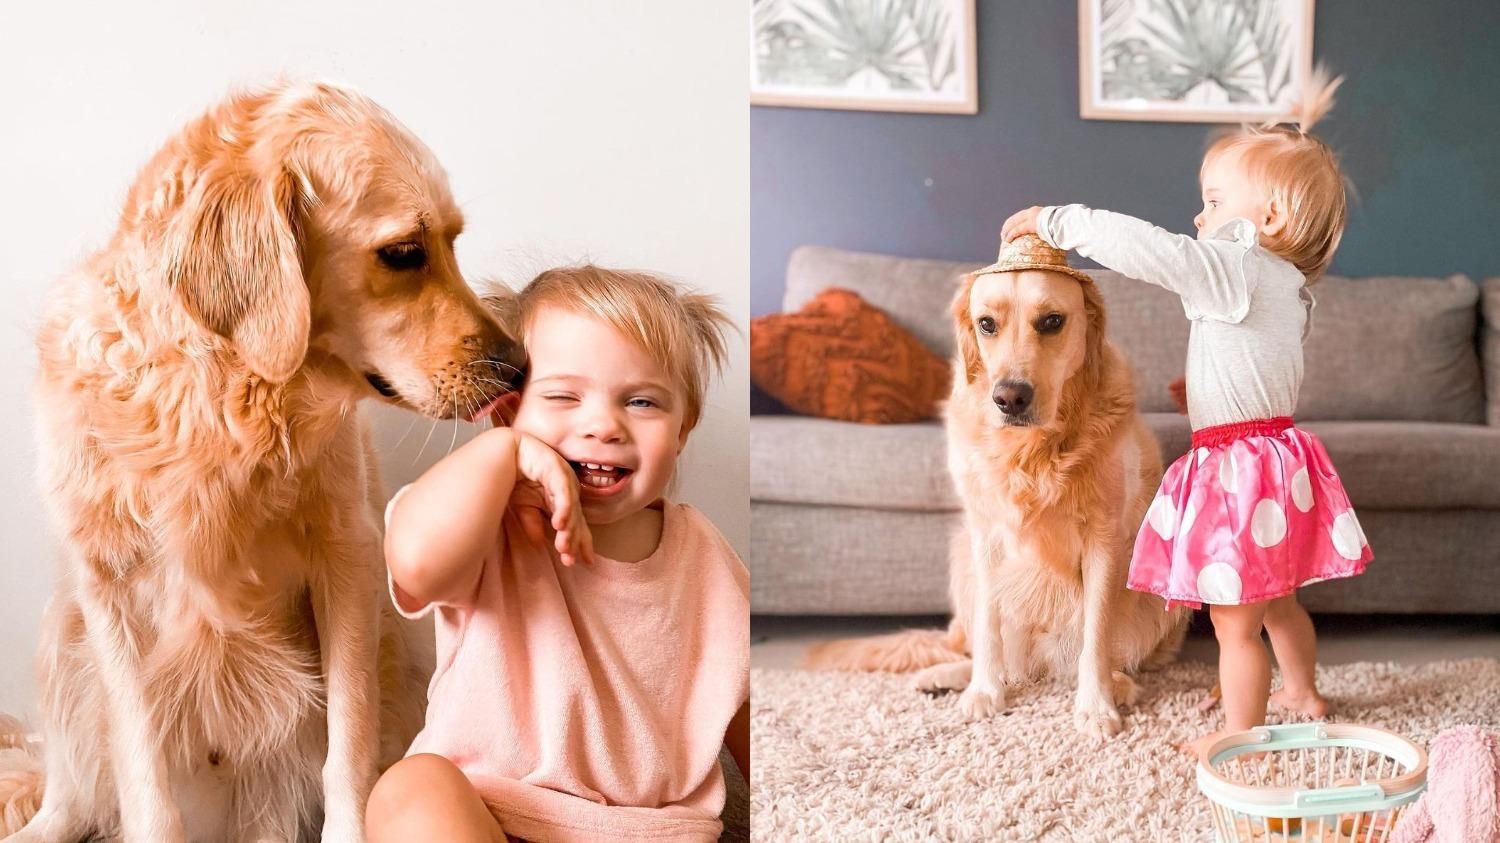 "Лучший старший брат": как огромный пес заботится о маленькой девочке - Pets